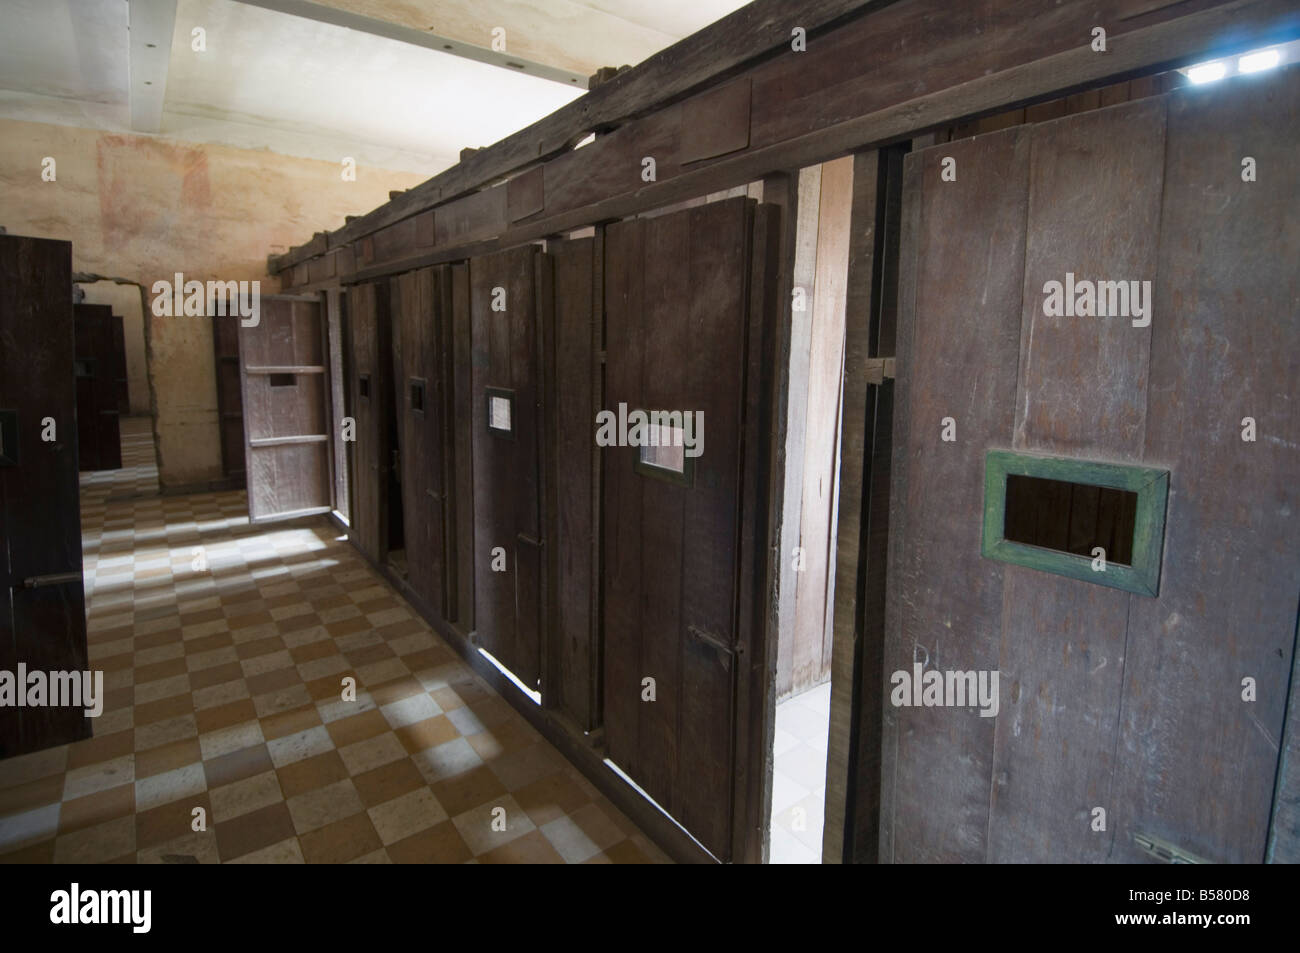 Das Genozid-Museum in einer ehemaligen Schule, die von Pol Pot für Folter, Phnom Penh, Kambodscha, Indochina verwendet wurde Stockfoto